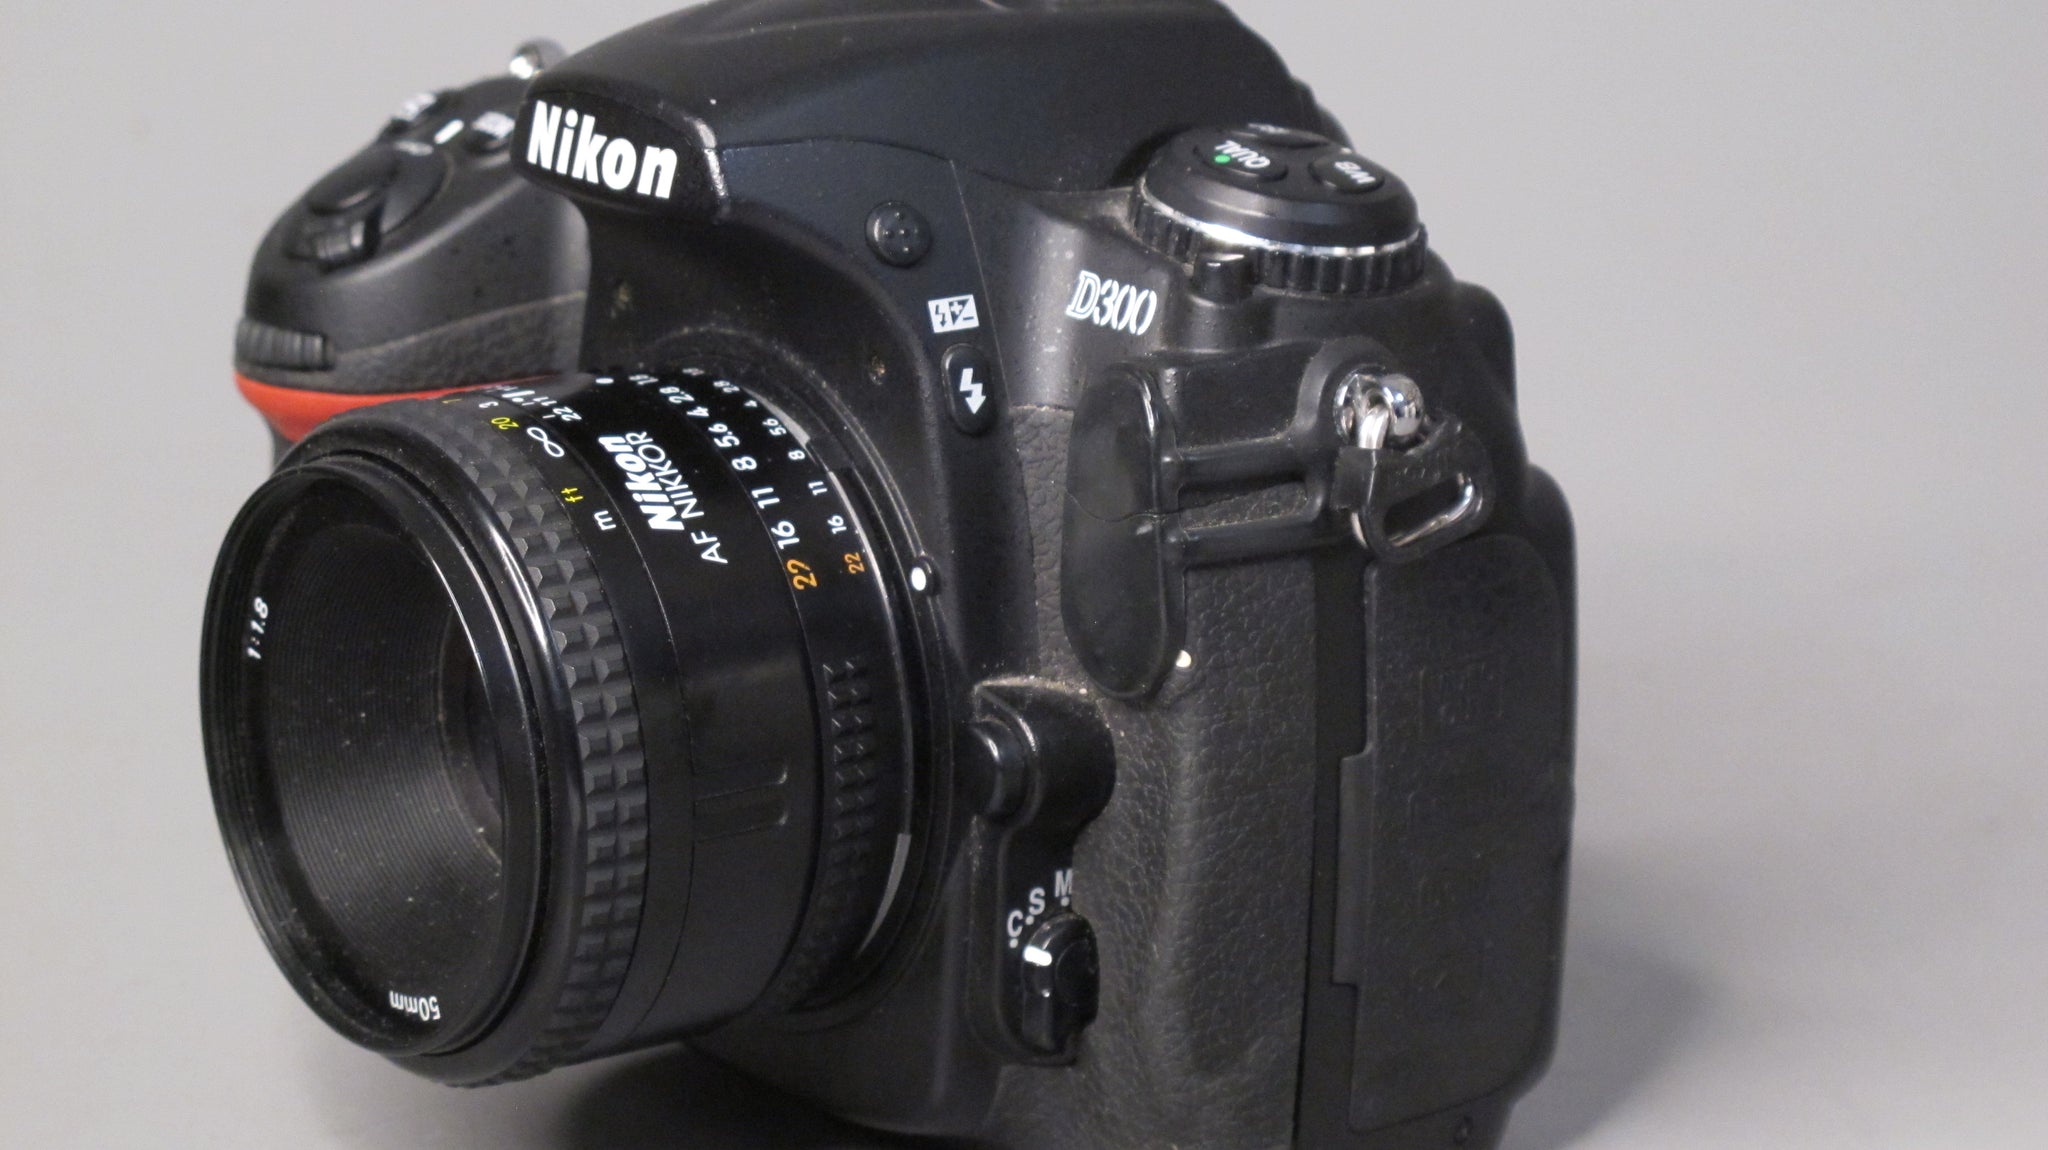 Nikon D300 Camera with a Nikon AF Nikkor 50mm f1.8 Lens – Phototek